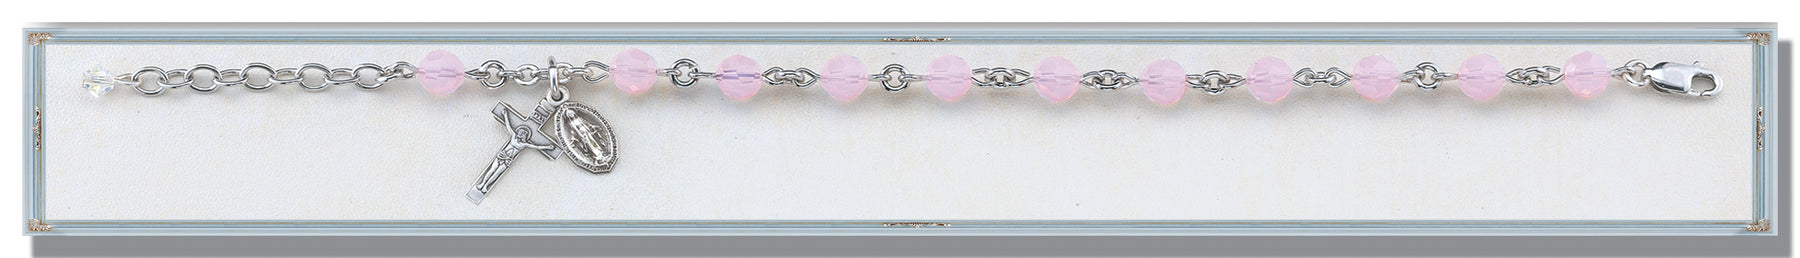 Rose Opal Round Faceted Swarovski Crystal Bracelet